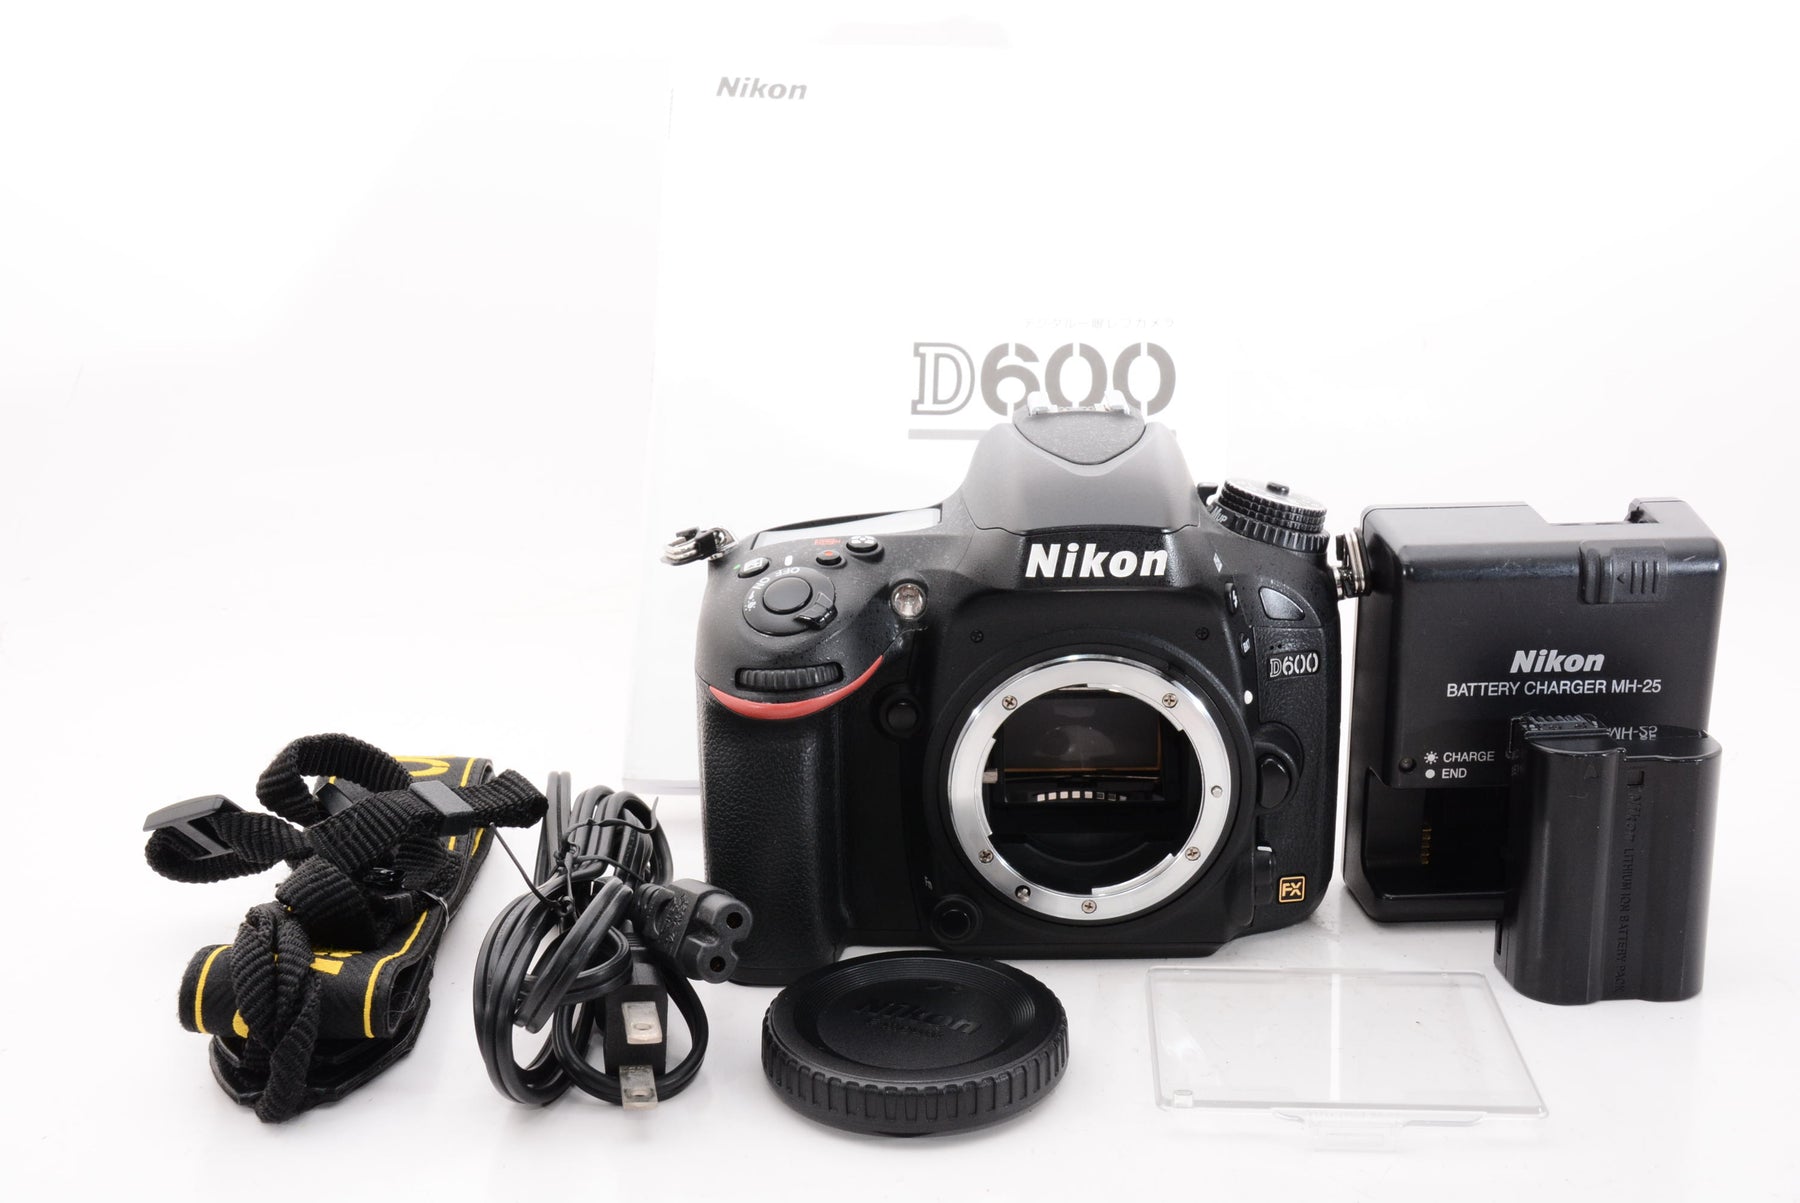 ニコン デジタル一眼レフカメラ D600 ボディ